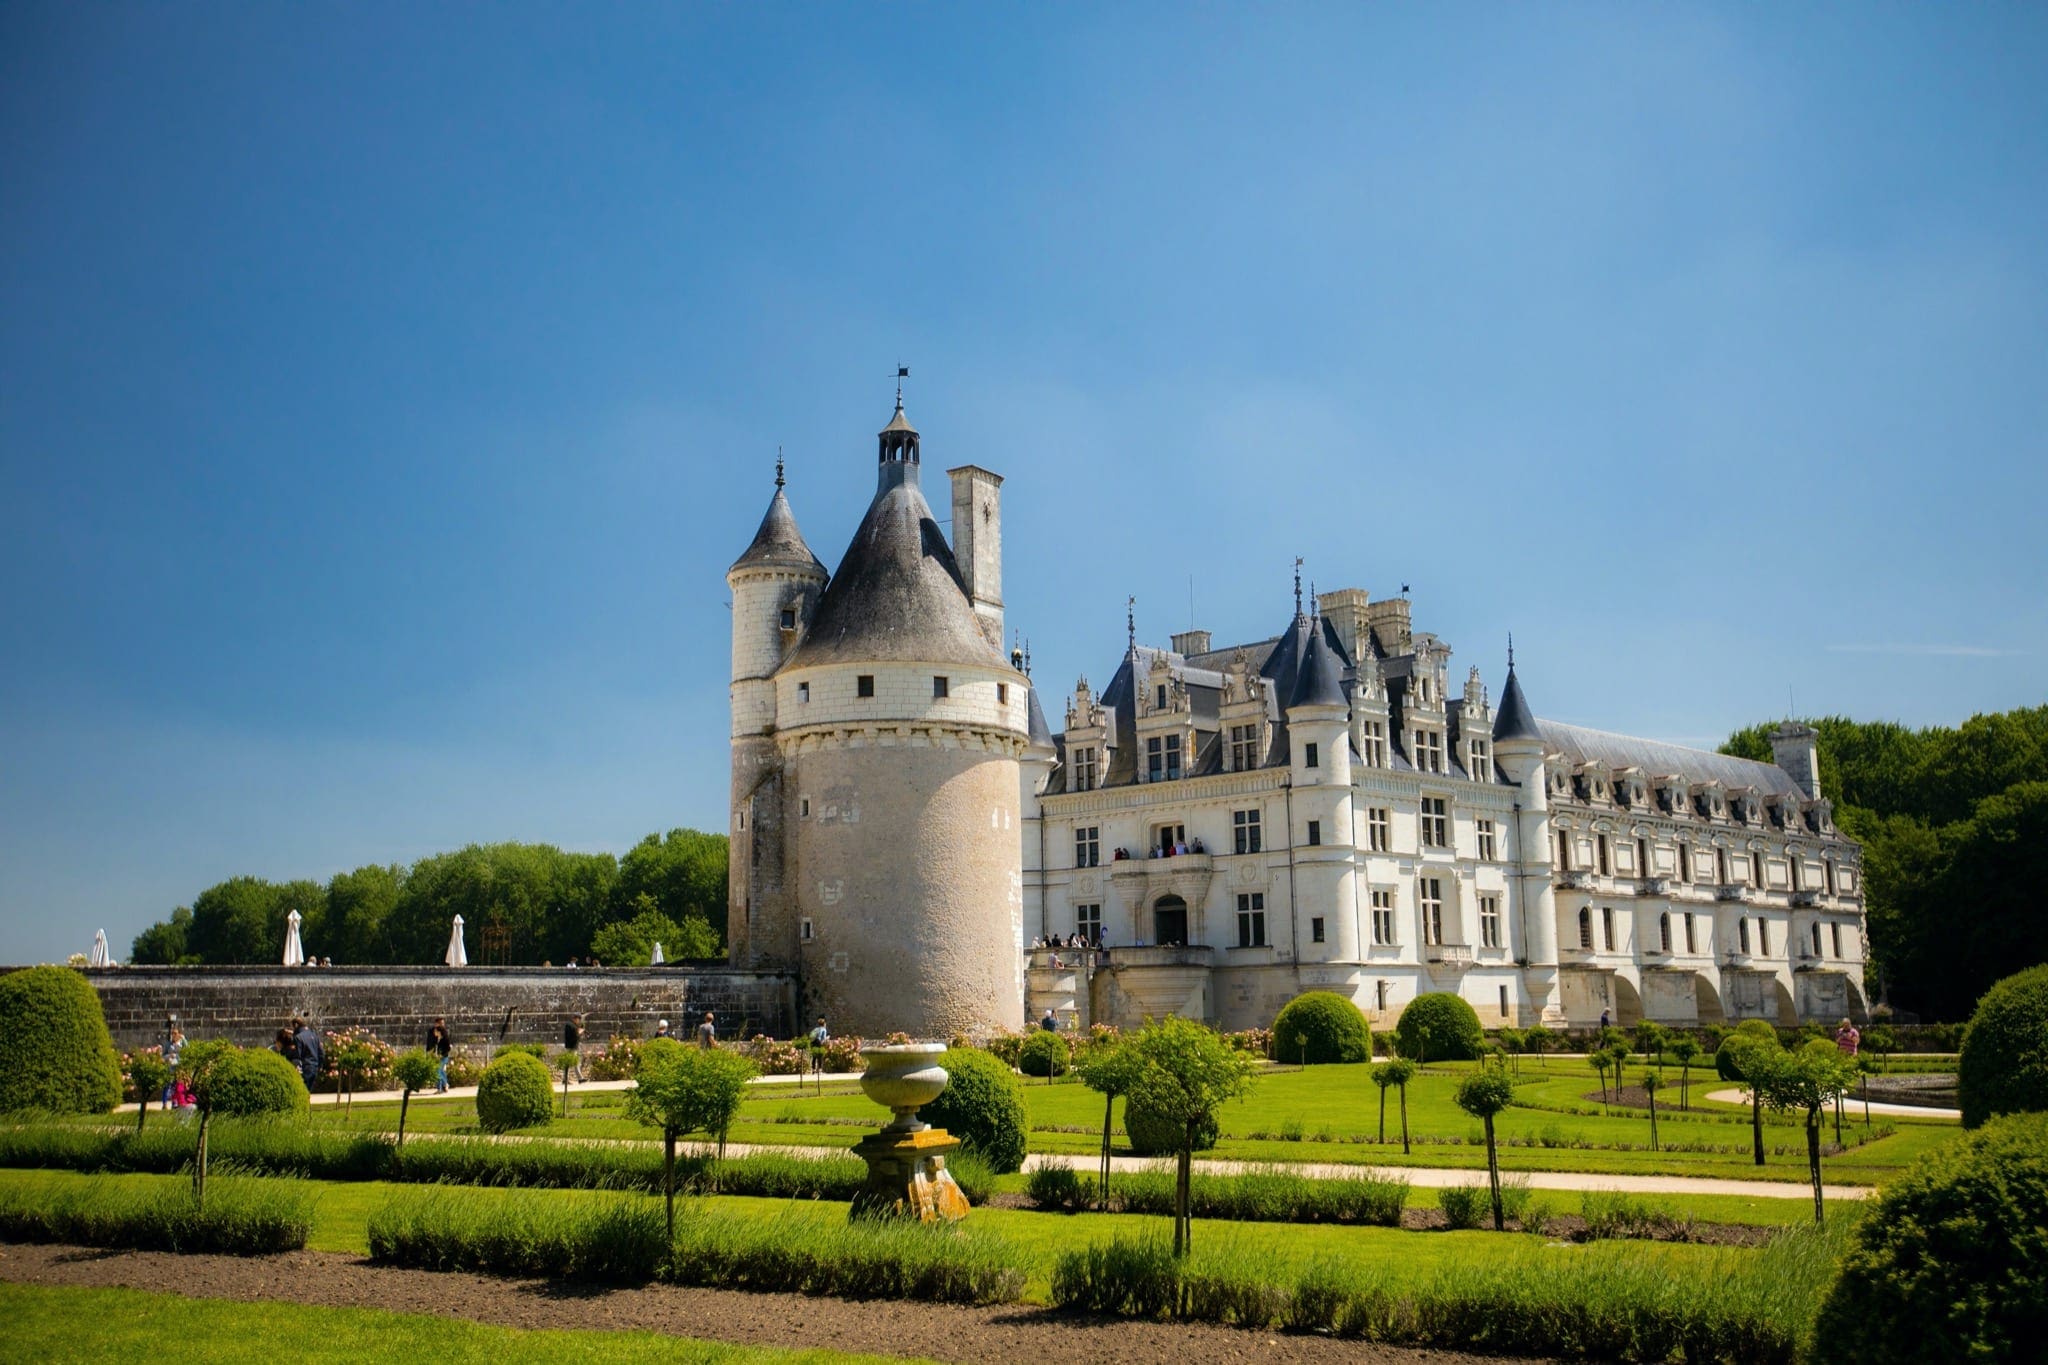 dorian mongel X8bwXanmSOo unsplash copy - Secretele Palatelor: Château de Chenonceau, castelul disputat de Caterina de Medici şi Diane de Poitiers